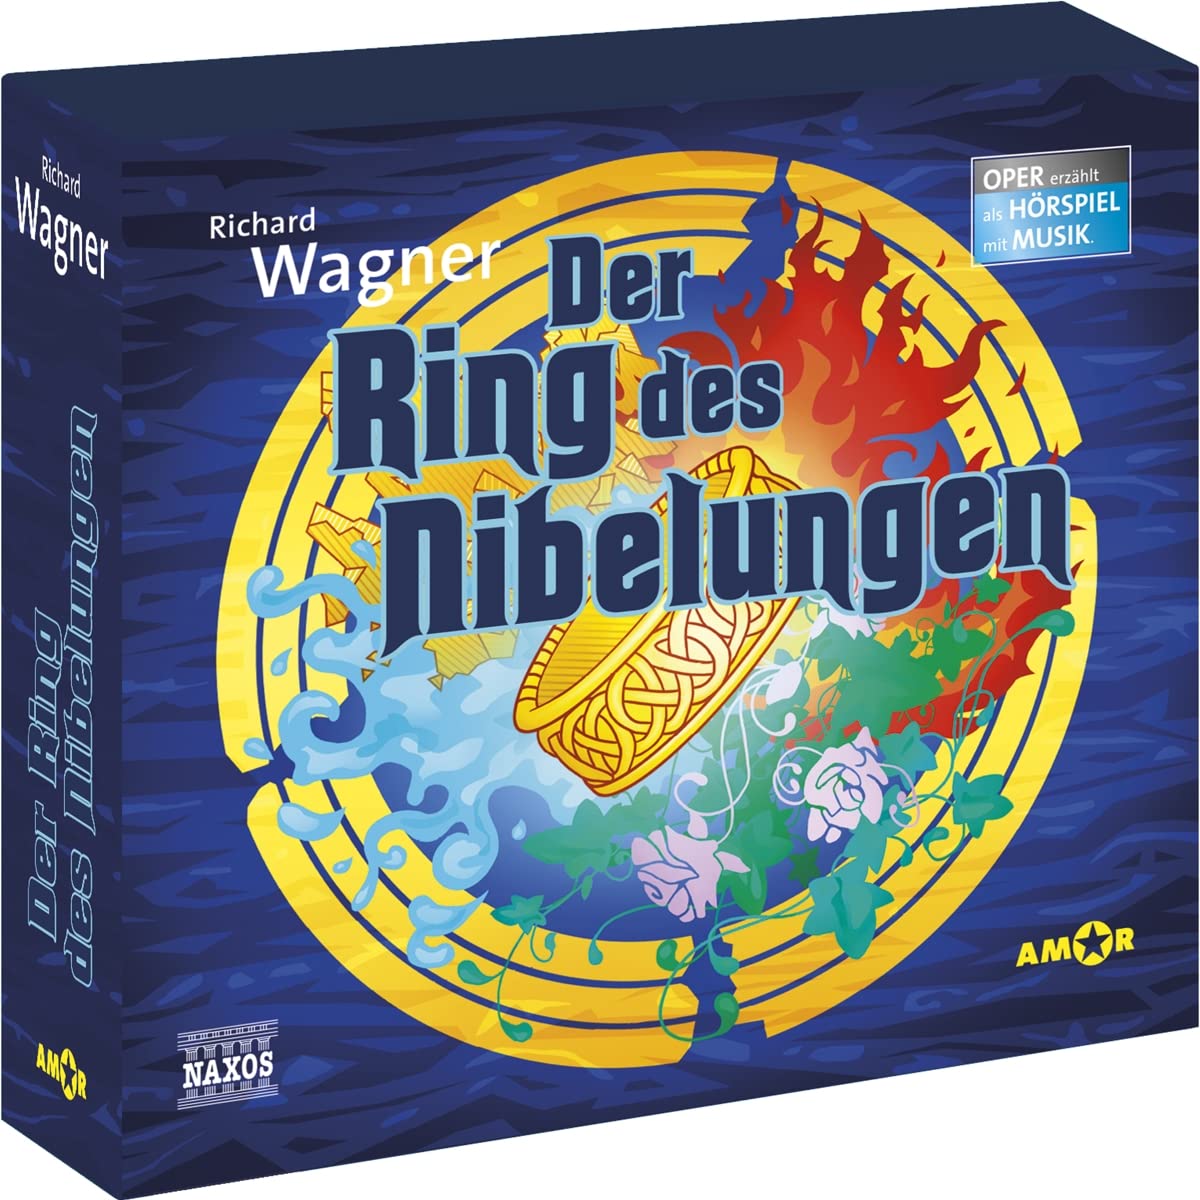 Audio Cd Richard Wagner - Der Ring Des Nibelungen (4 Cd) NUOVO SIGILLATO, EDIZIONE DEL 16/02/2022 SUBITO DISPONIBILE